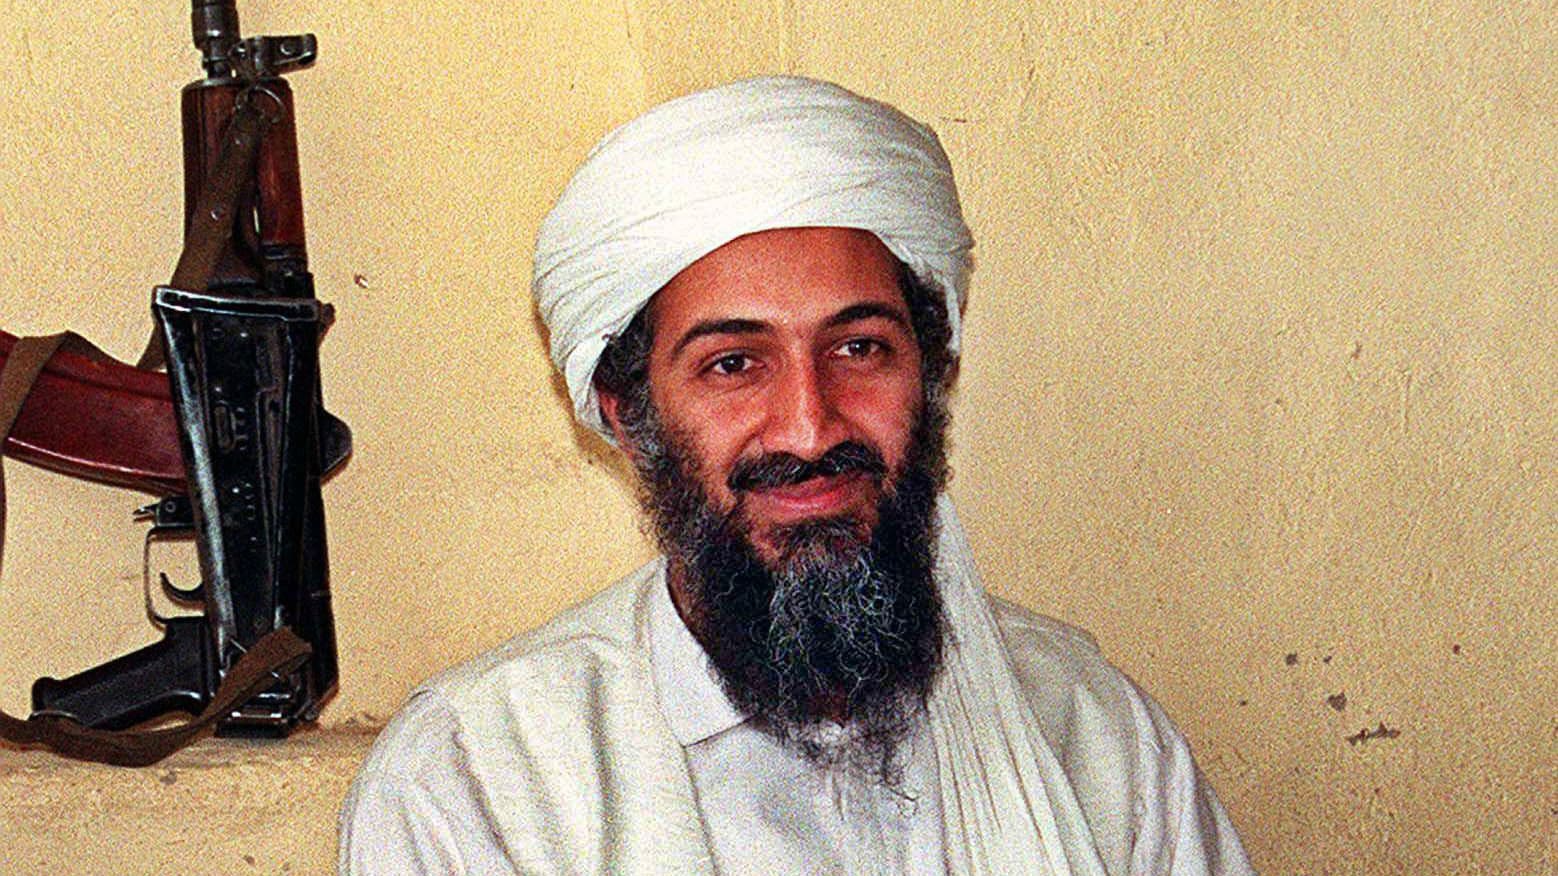 آخر صحفي غربي أجرى مقابلة مع بن لادن يتحدث عن تعاطف أمريكيين معه.. ماذا قال؟